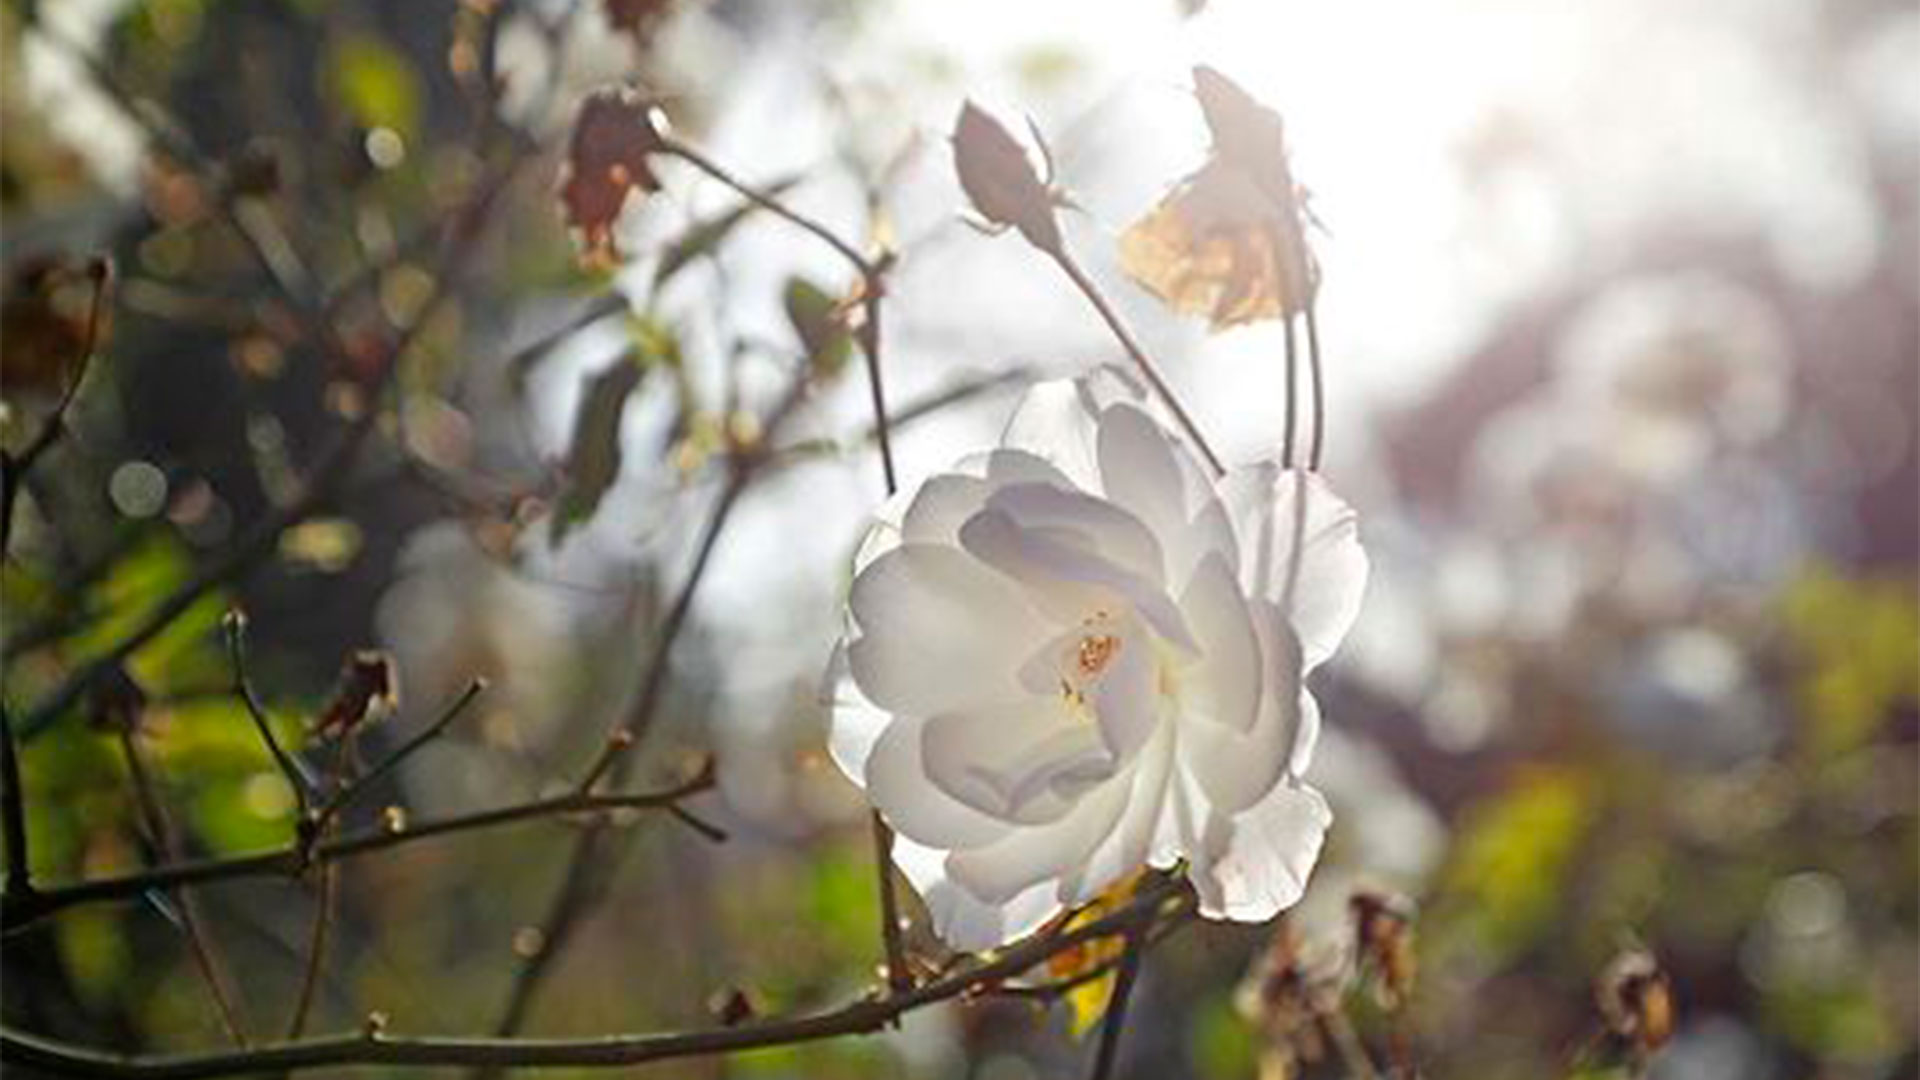 Una rosa blanca, símbolo de la pureza. En el Rosedal del Parque Chacabuco hay unos mil rosales